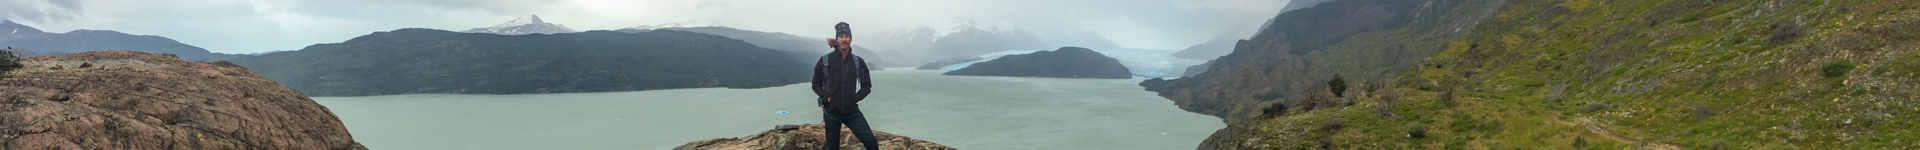 Glaciar Grey - Torres del Paine, Chile